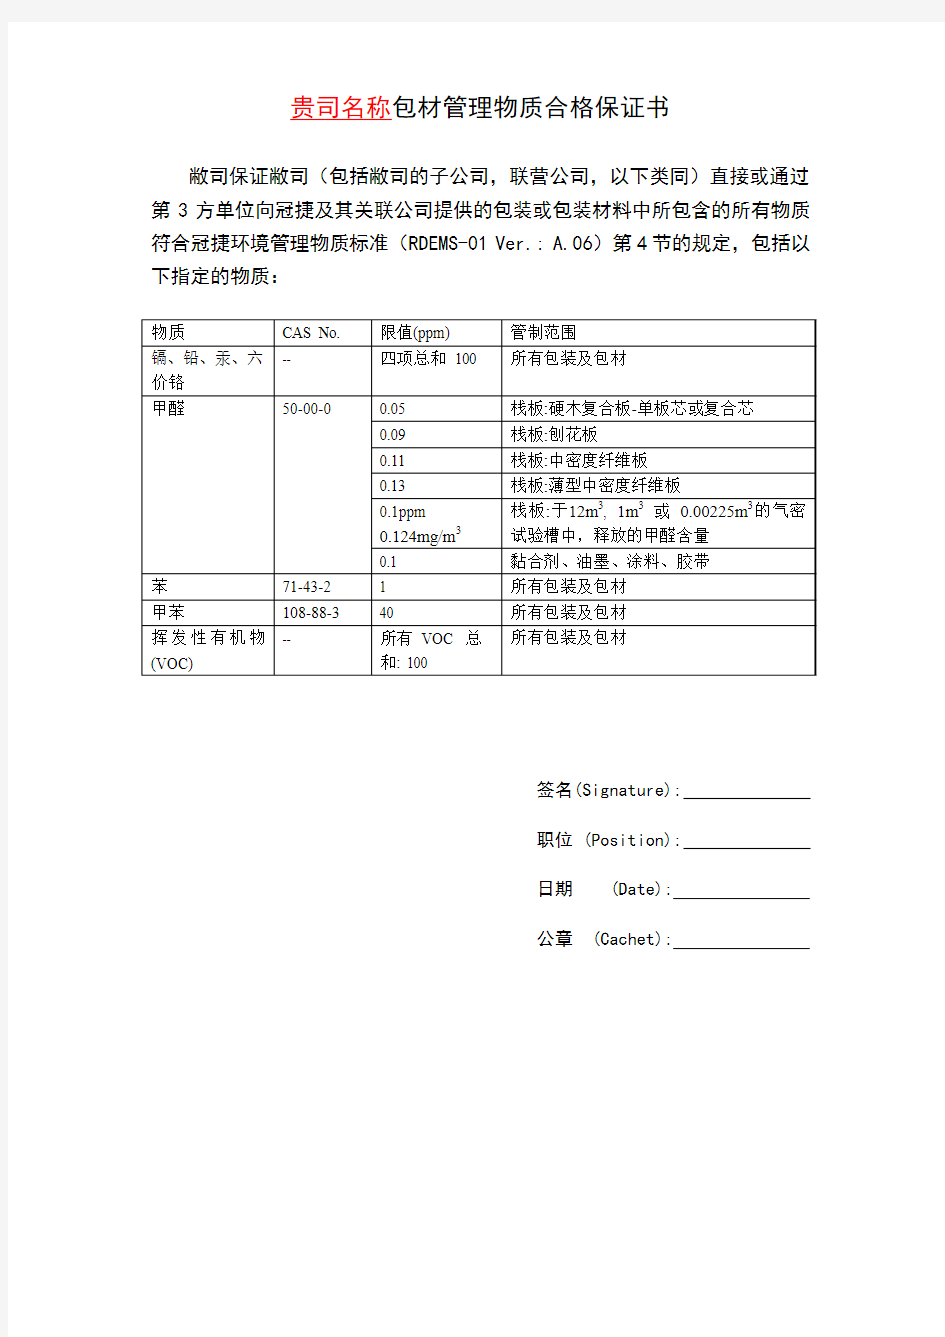 包材管理物质合格保证书_A.06_20110916_中文